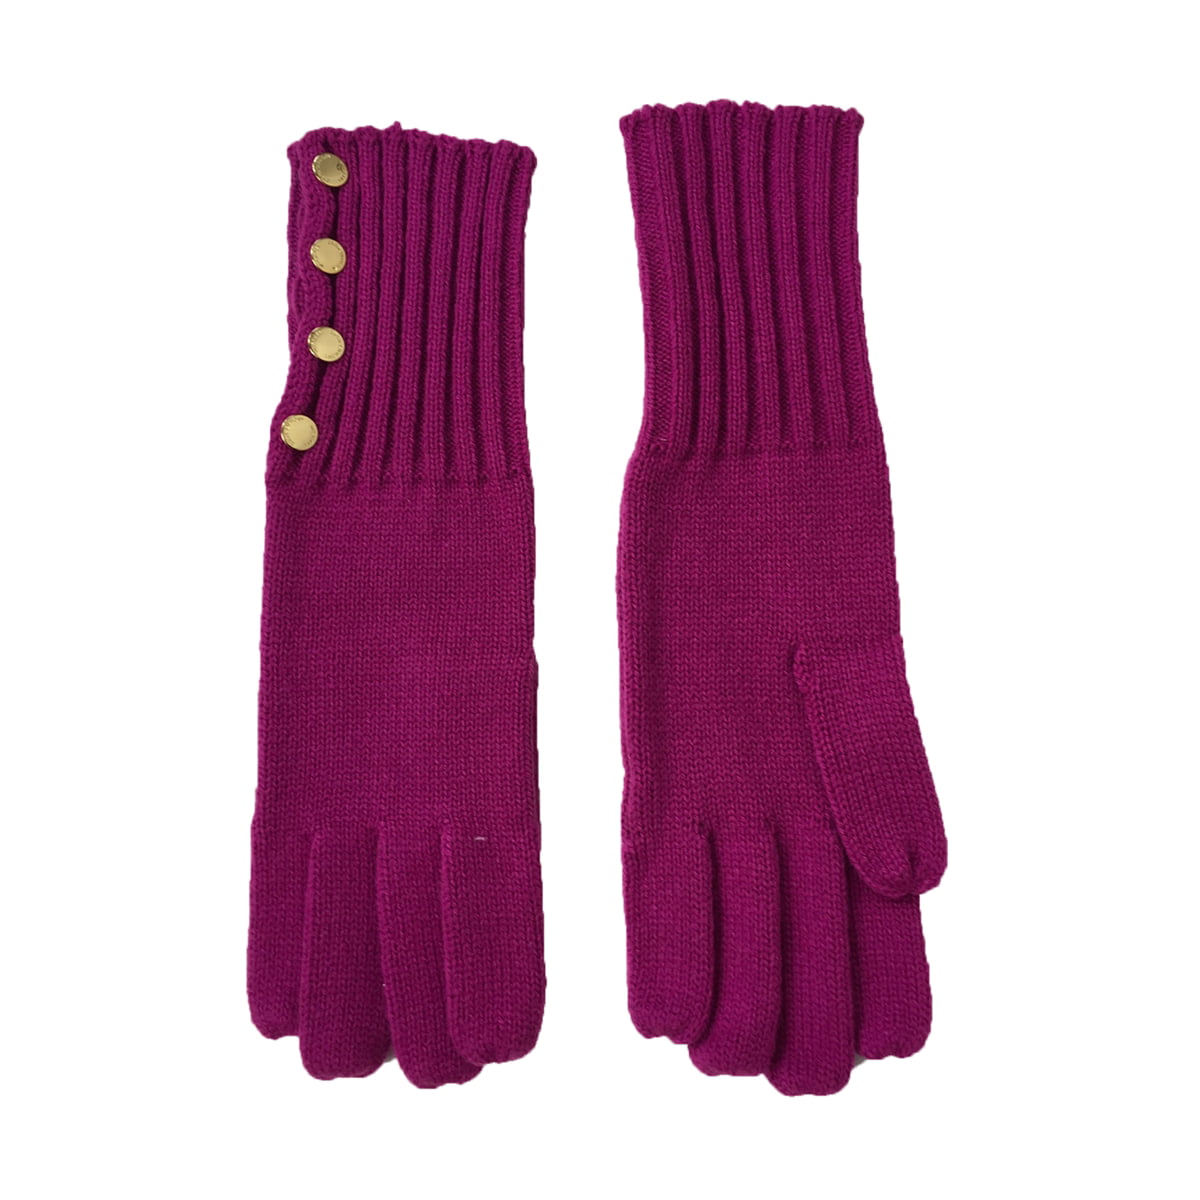 Michael Kors Button Up Long Knit Gloves, Deep Fuchsia - Walmart.com